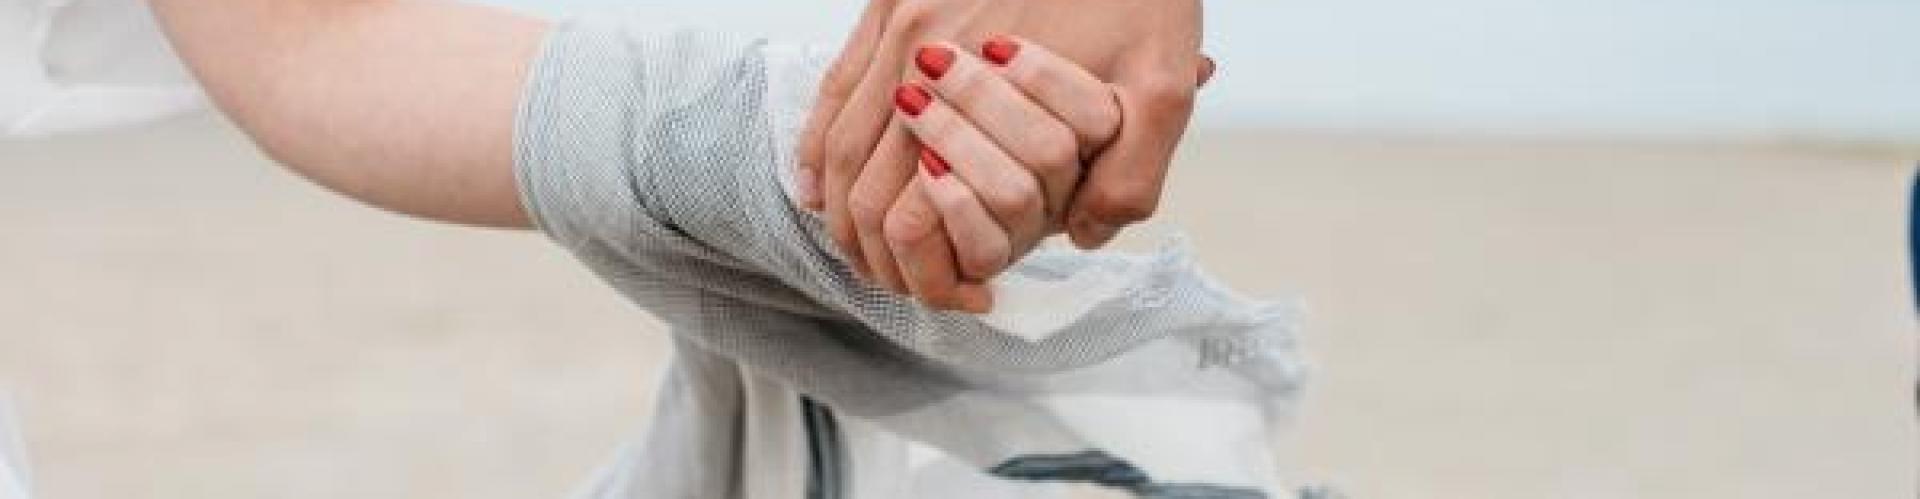 6 conseils pour une vie en couple réussie après le mariage